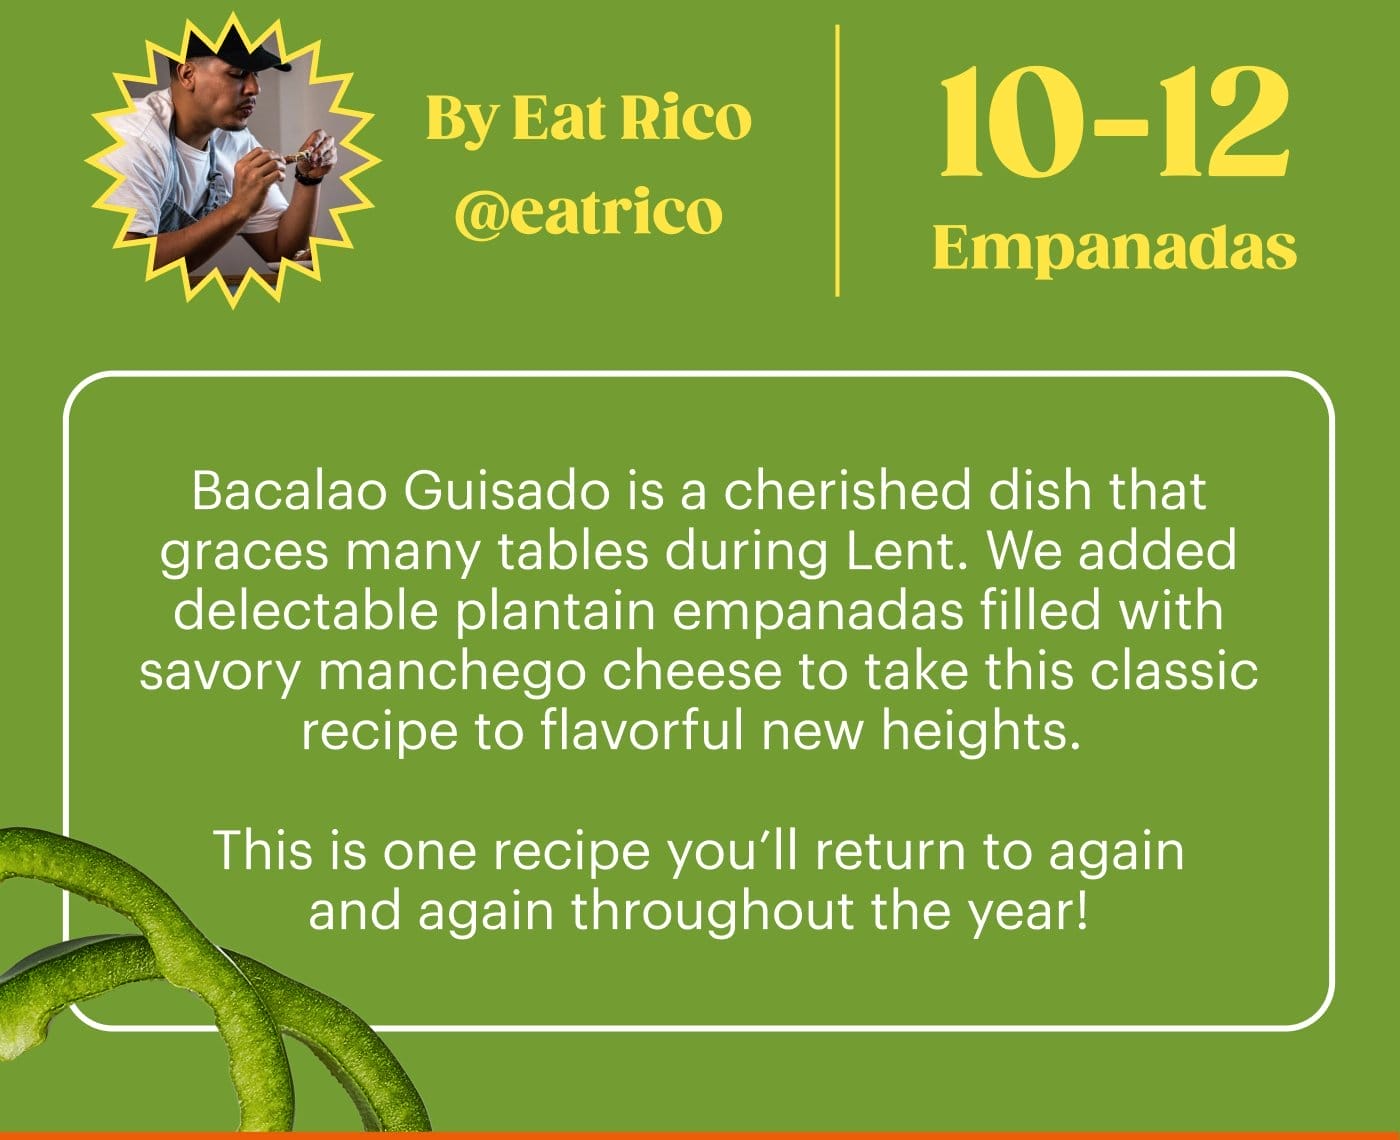 Bacalao Guisado with Plantain Empanadas GET THE RECIPE